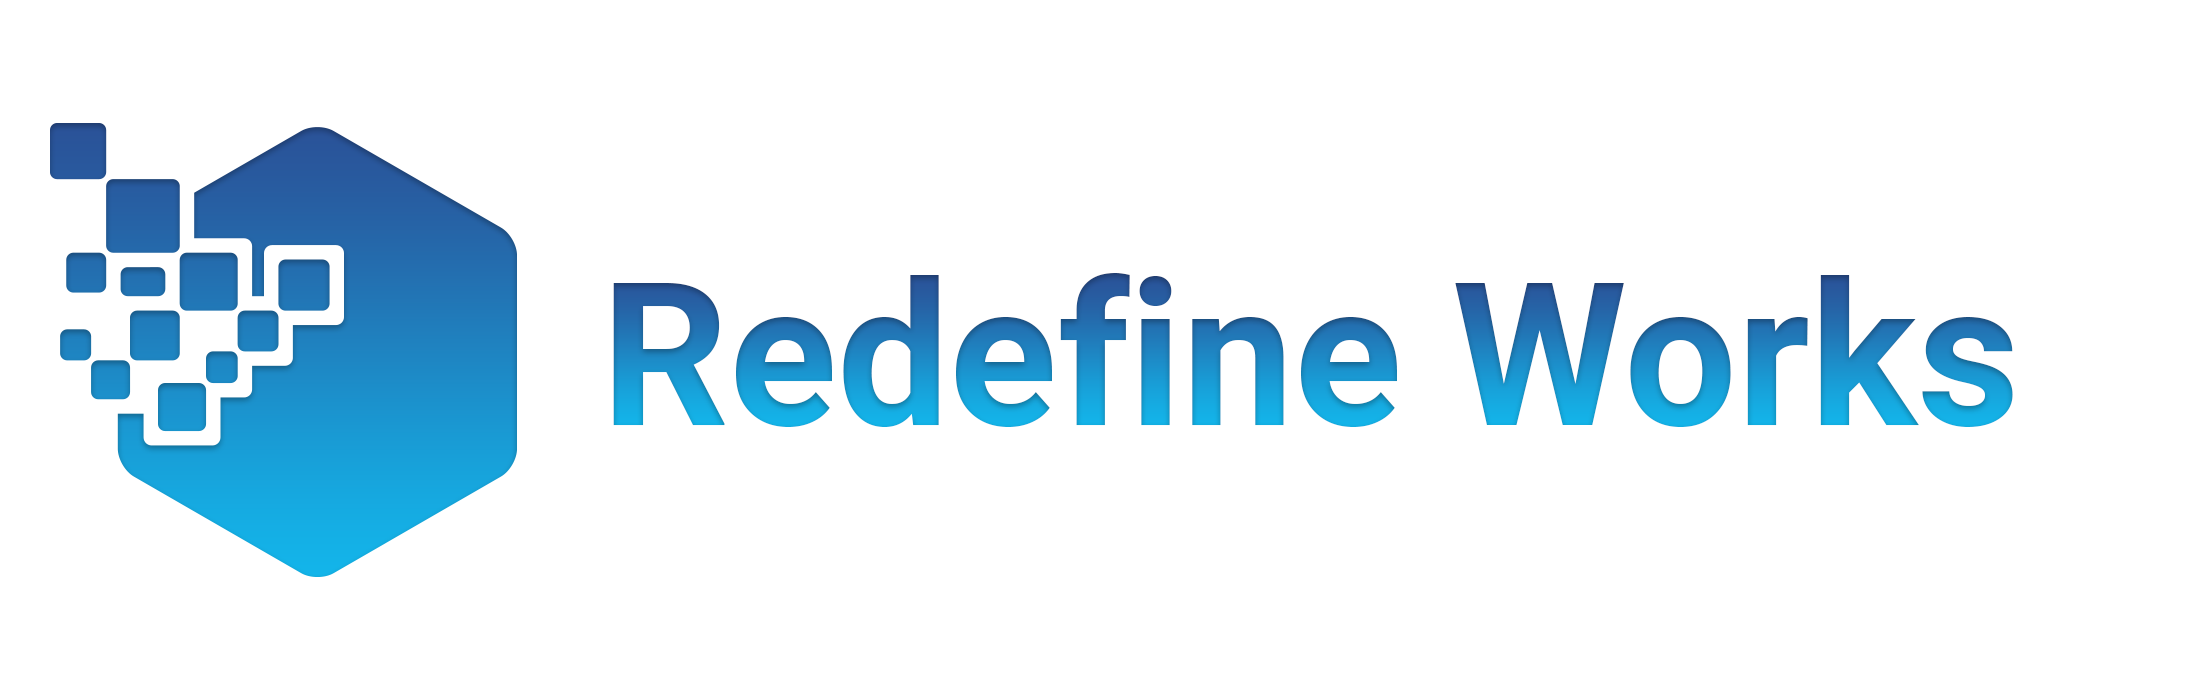 Redefine Works, LLC